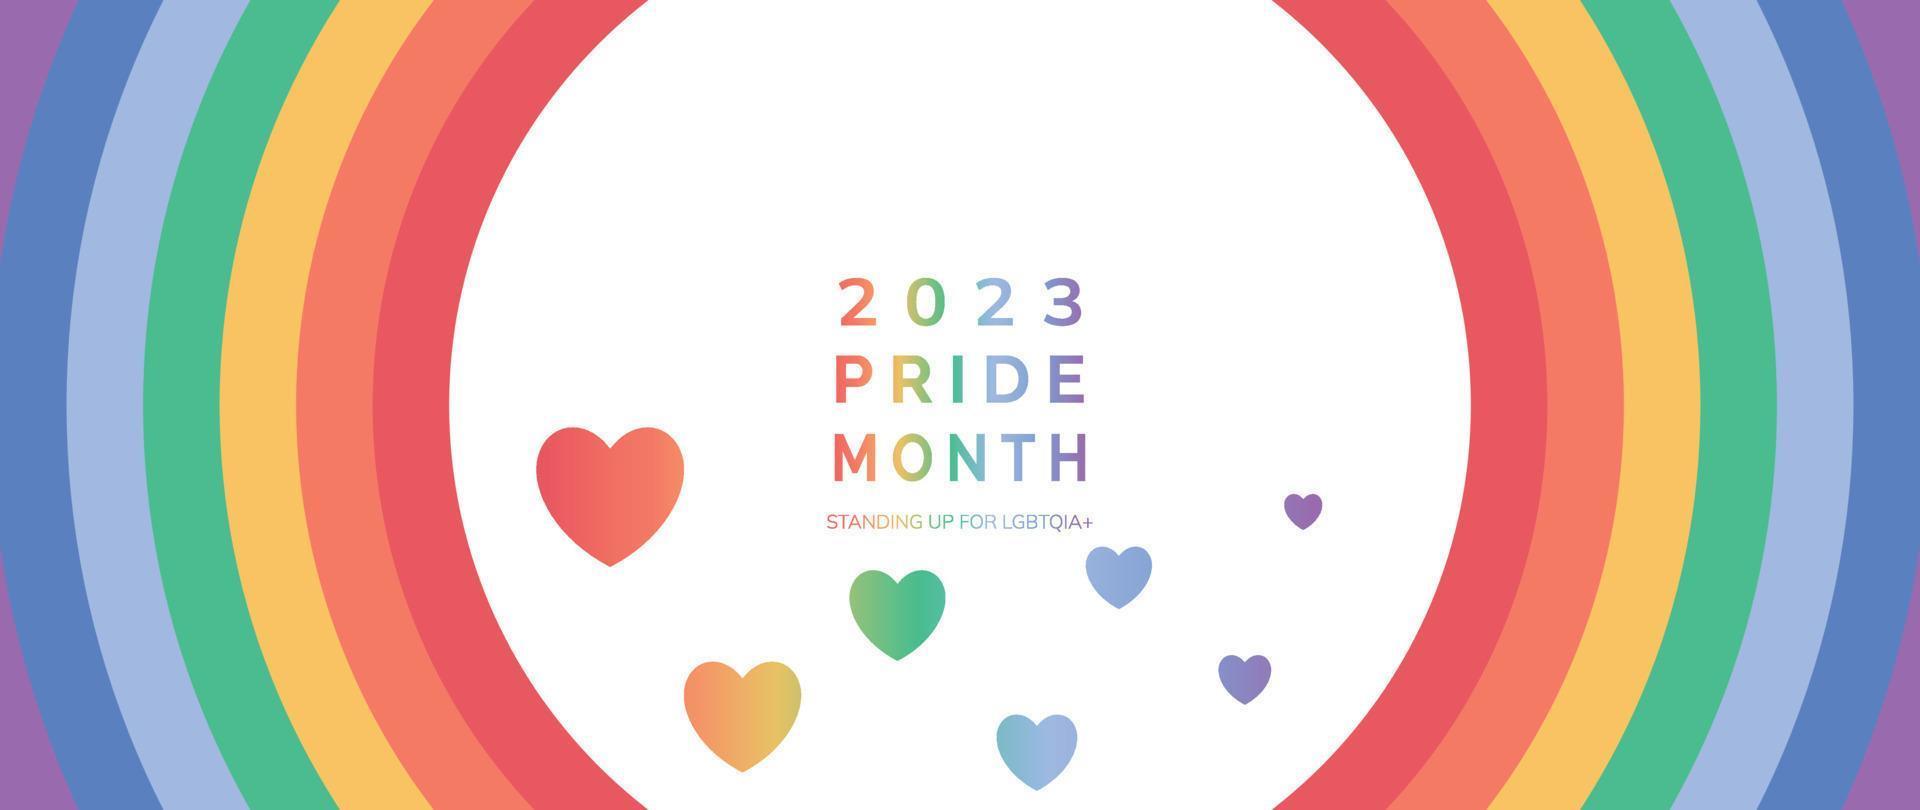 contento orgoglio mese sfondo. LGBTQ Comunità simboli con arcobaleno, cuore, pendenza cuore brillare. design per celebrazione contro violenza, bisessuale, transgender, Genere uguaglianza, diritti concetto. vettore